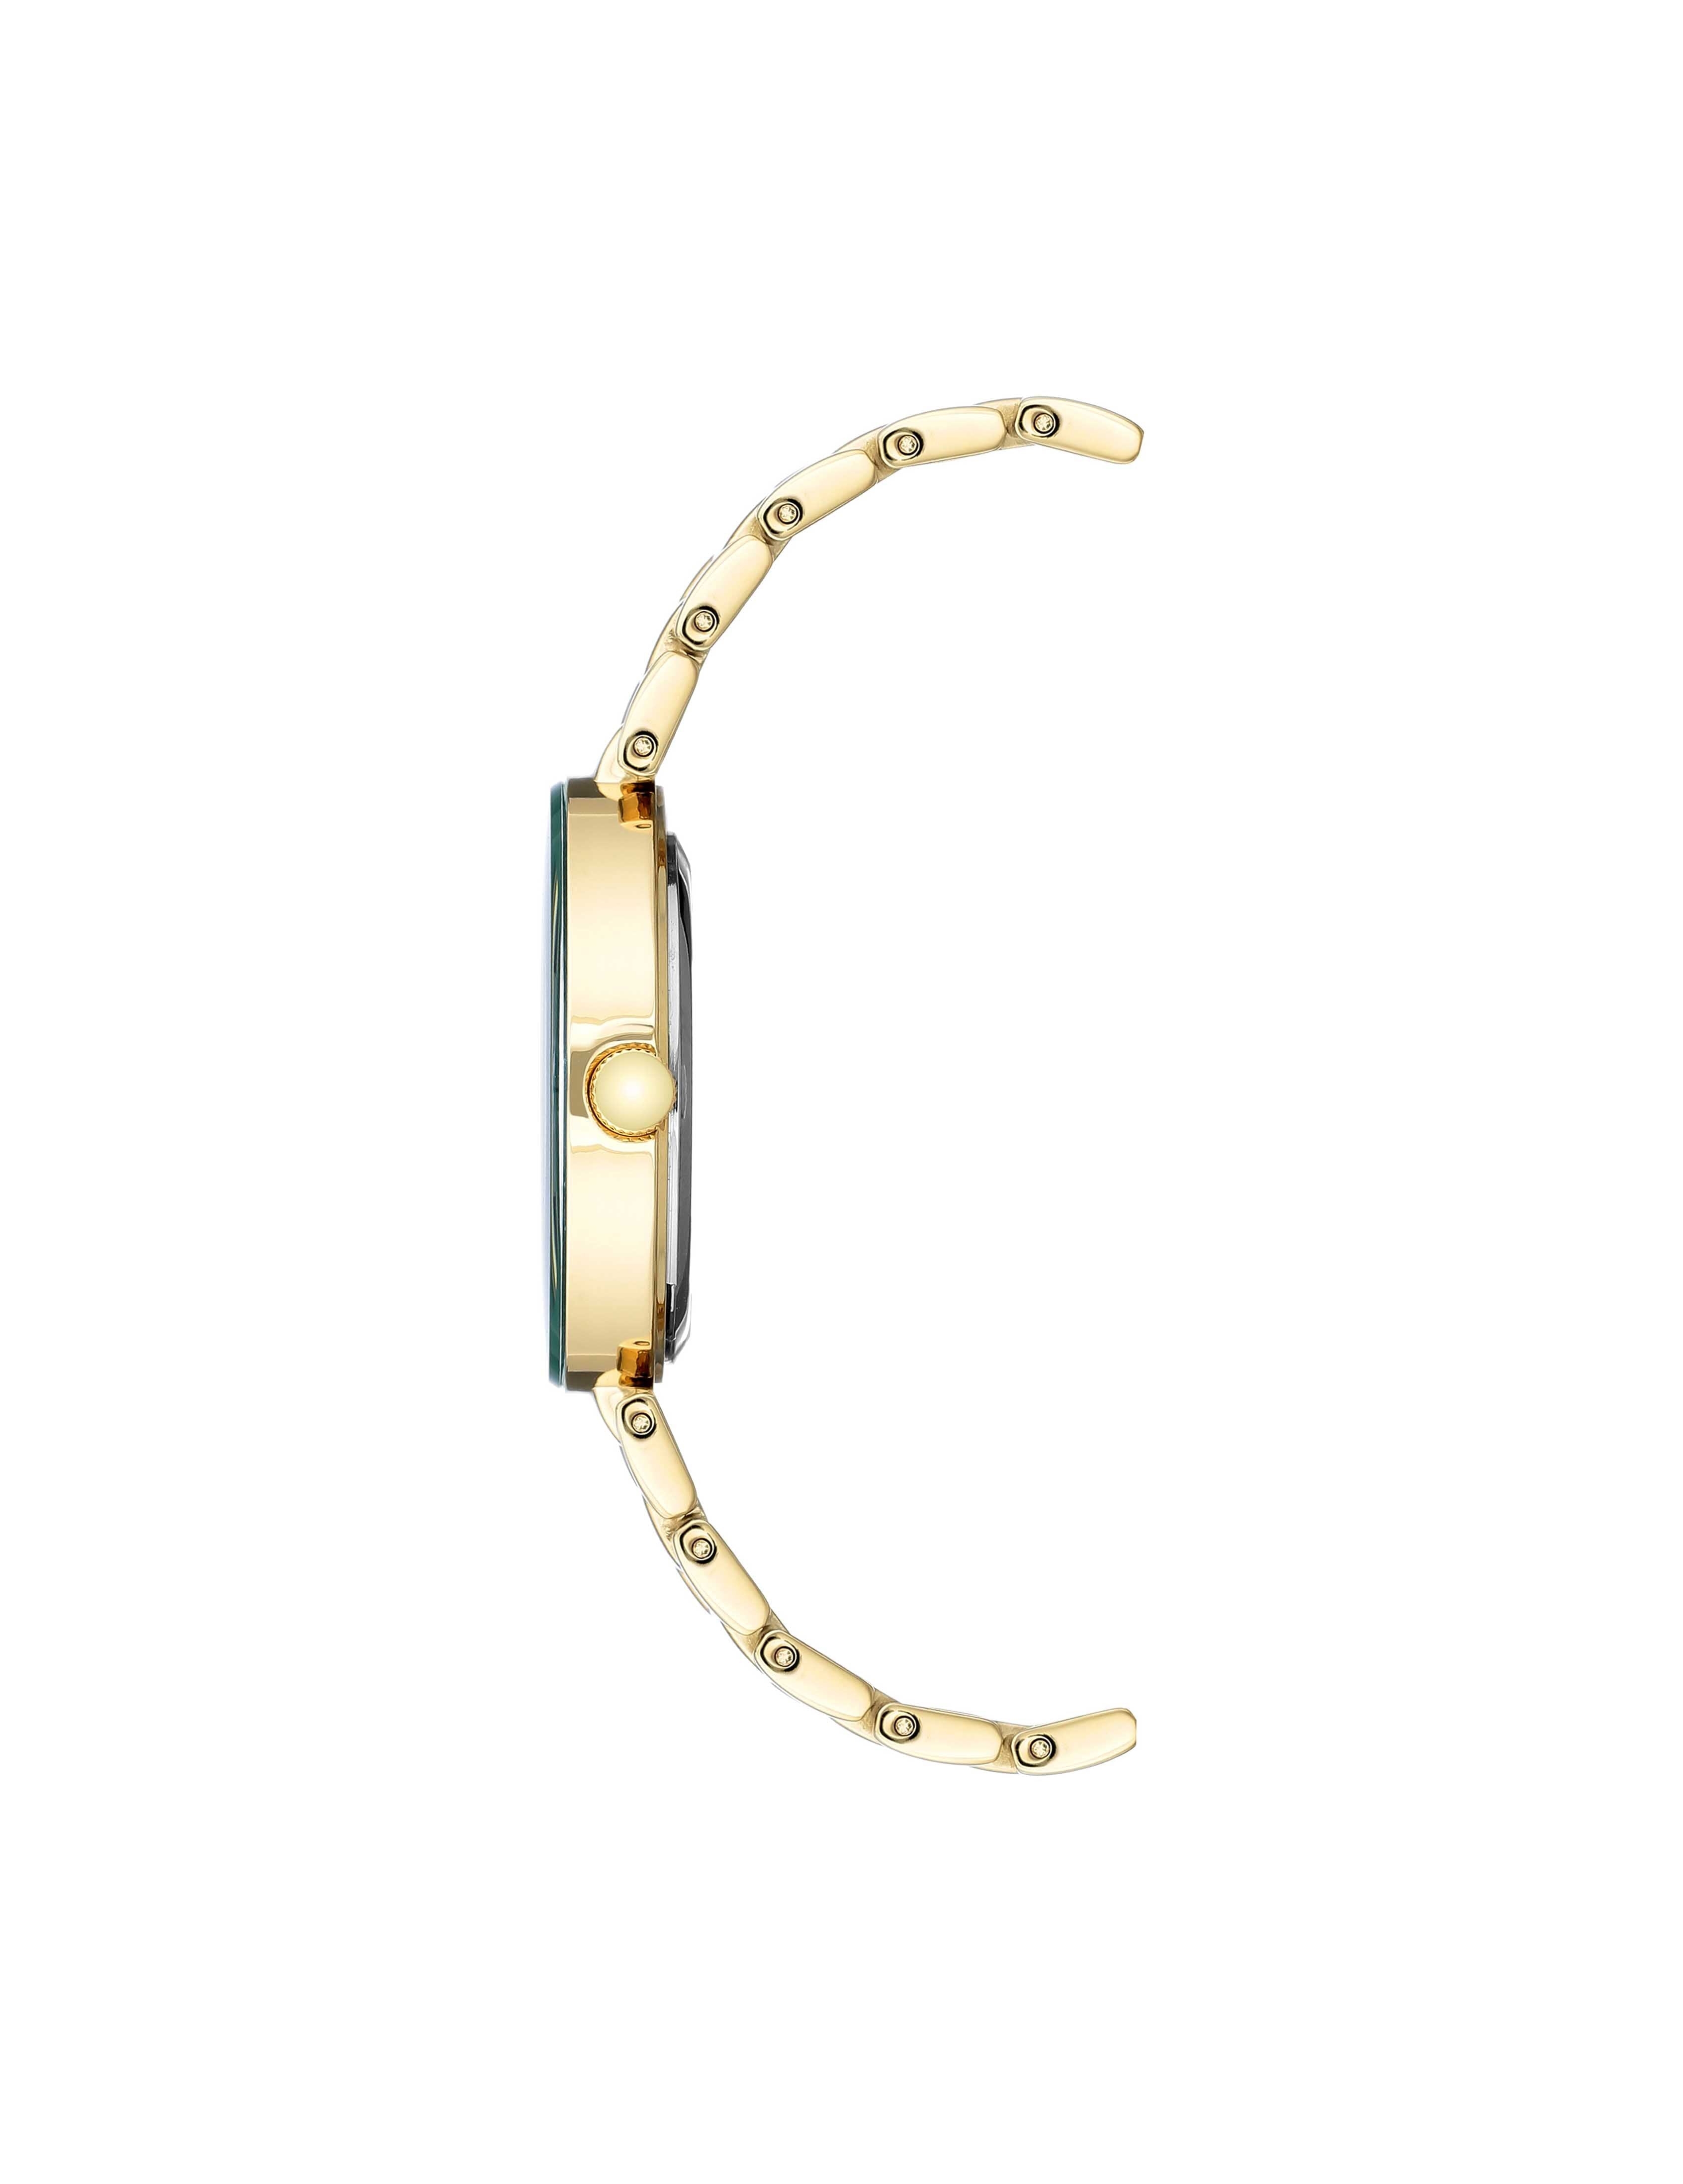 Anne Klein Women's Diamond Dial Bracelet Watch in Green&Gold-Tone